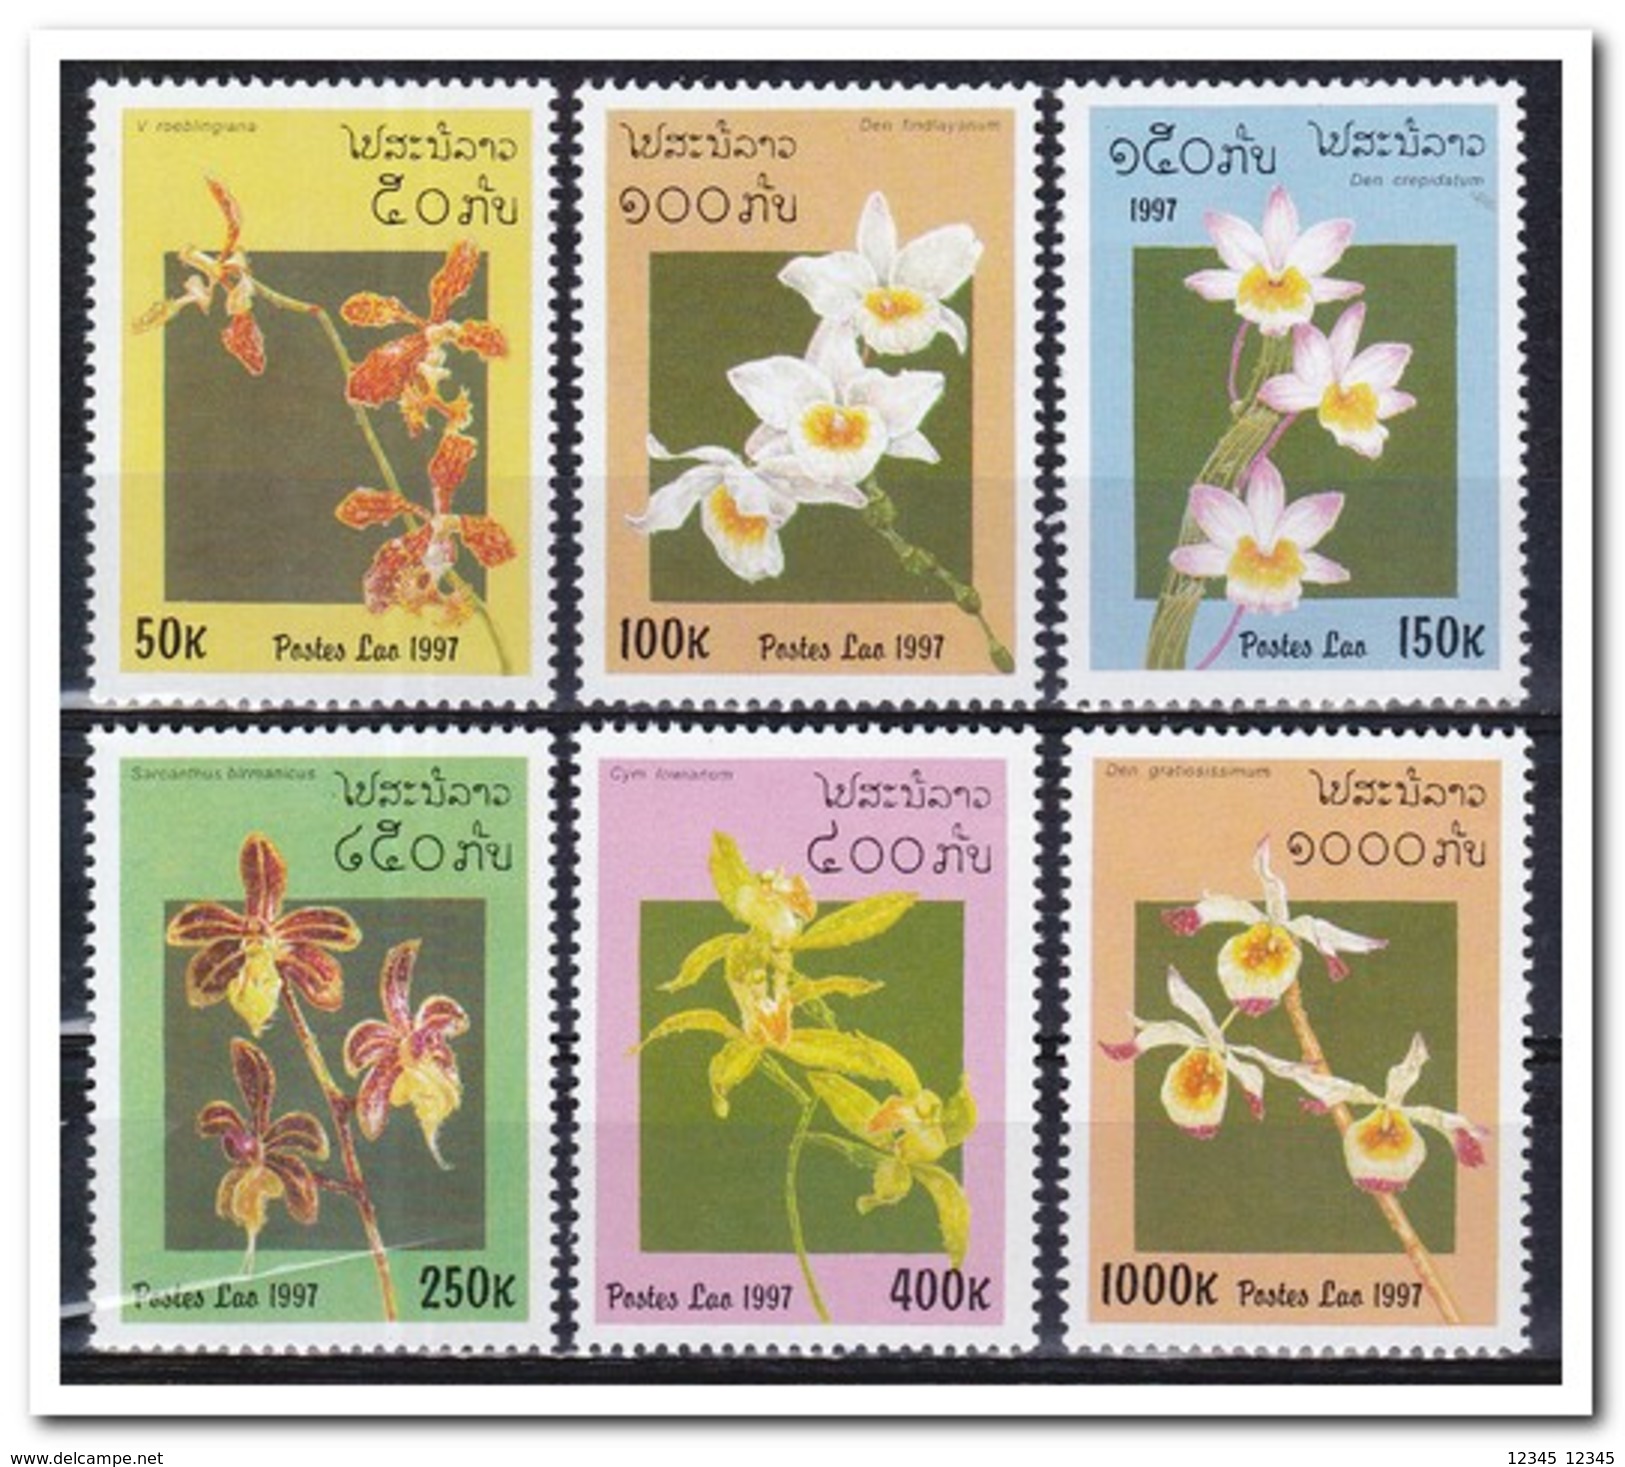 Laos 1997, Postfris MNH, Flowers, Orchids - Laos